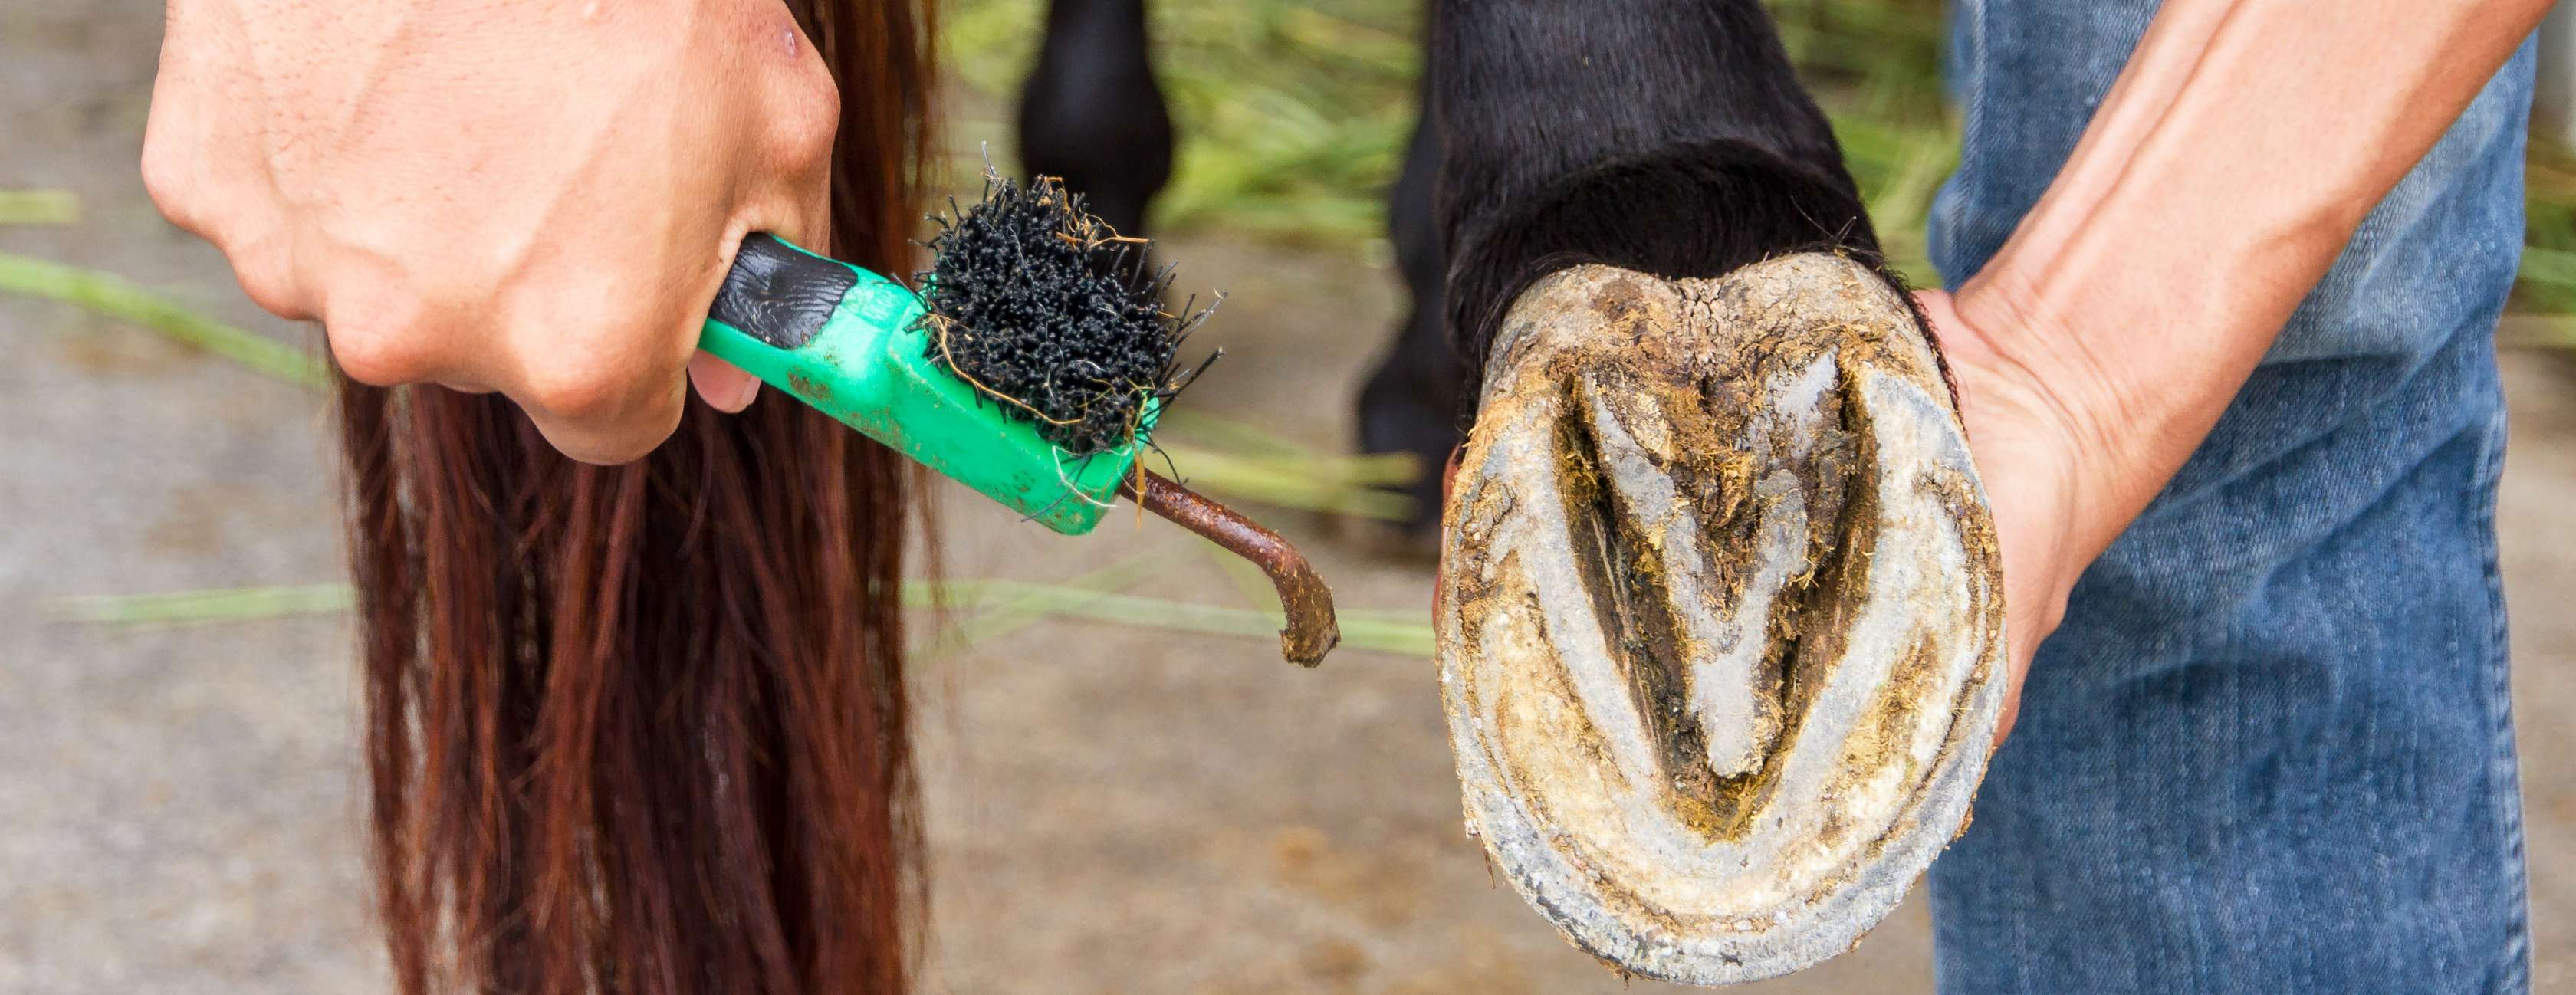 Allianz - Pferdepflege: Ein Reiter putzt die Hufe seines Pferdes mit einem Hufkratzer.